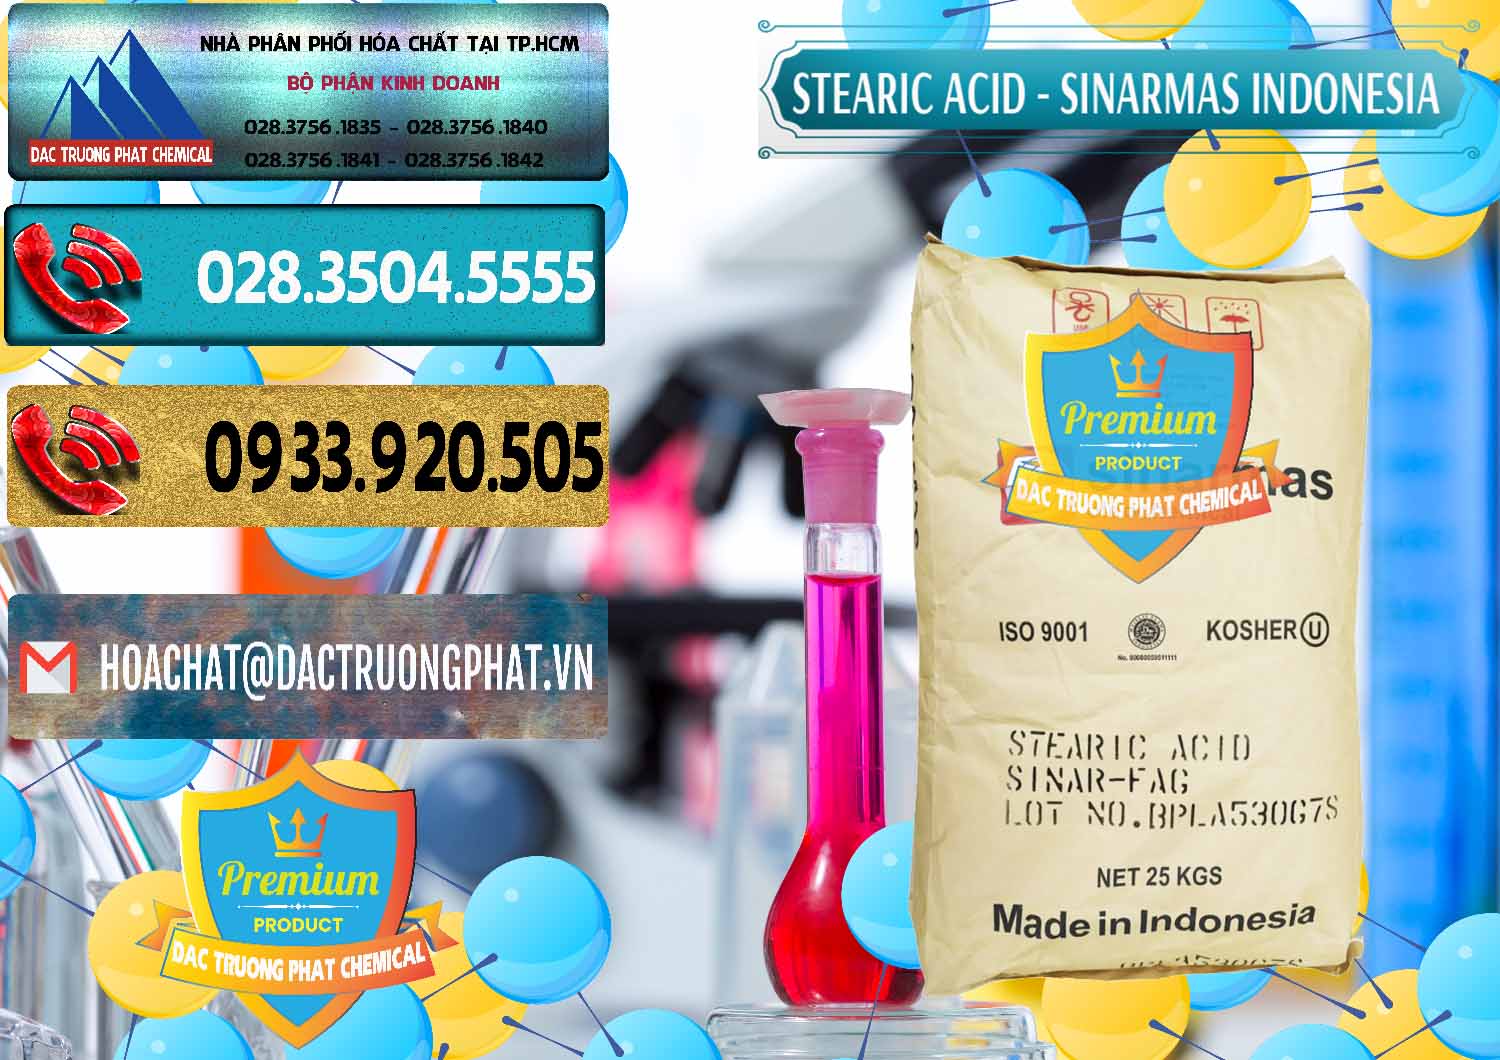 Công ty chuyên cung ứng & bán Axit Stearic - Stearic Acid Sinarmas Indonesia - 0389 - Đơn vị kinh doanh _ phân phối hóa chất tại TP.HCM - hoachatdetnhuom.com